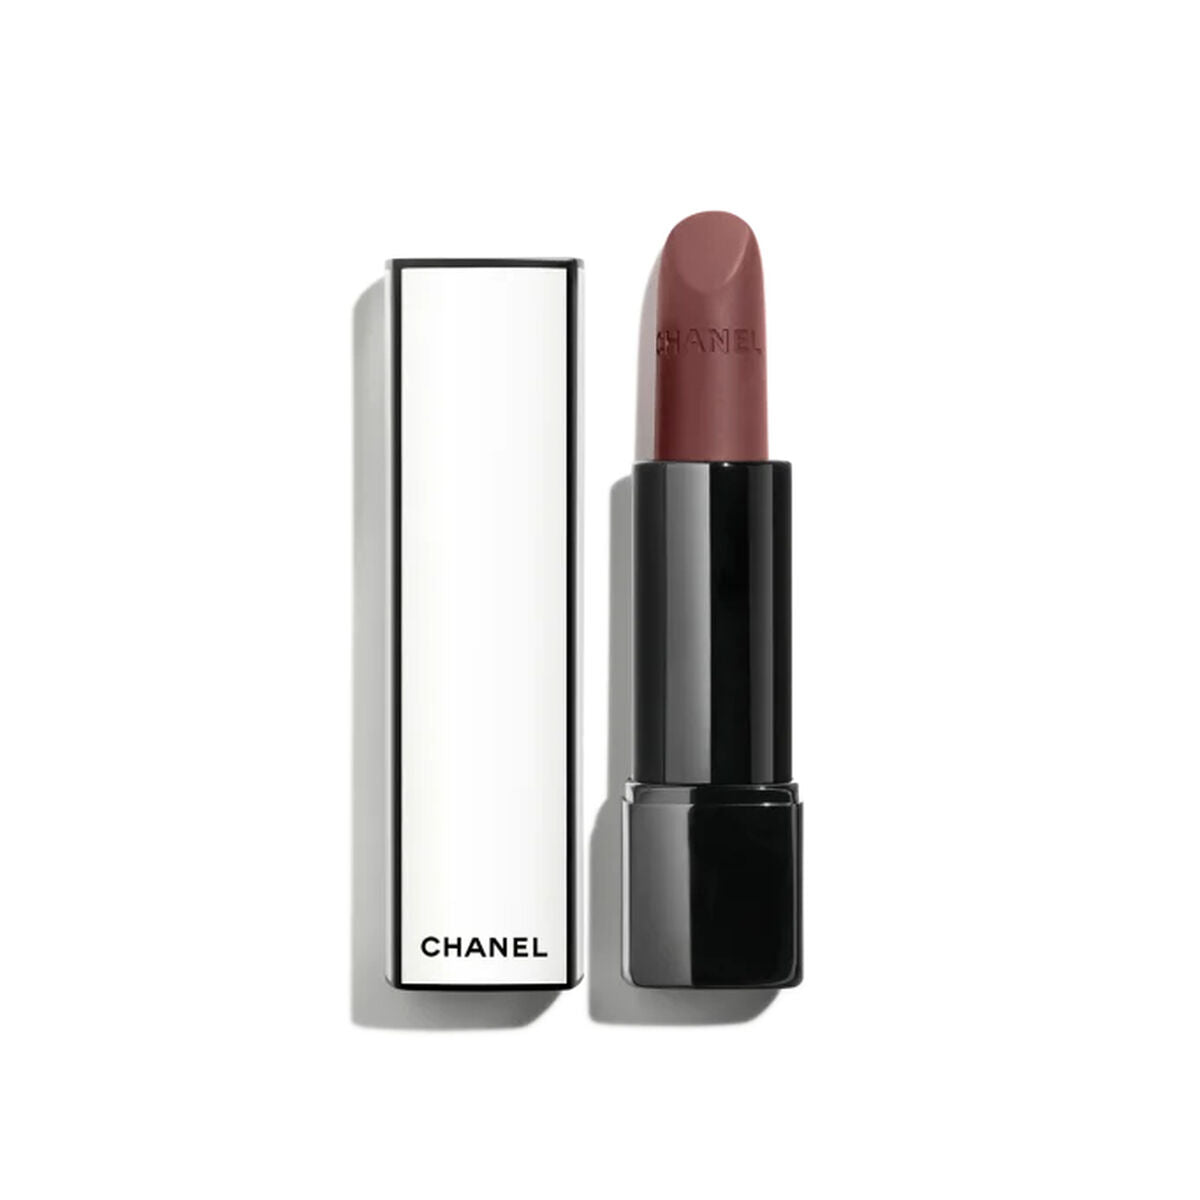 Kaufe Lippenstift Chanel Rouge Allure Velvet Nº 04:00 3,5 g bei AWK Flagship um € 72.00